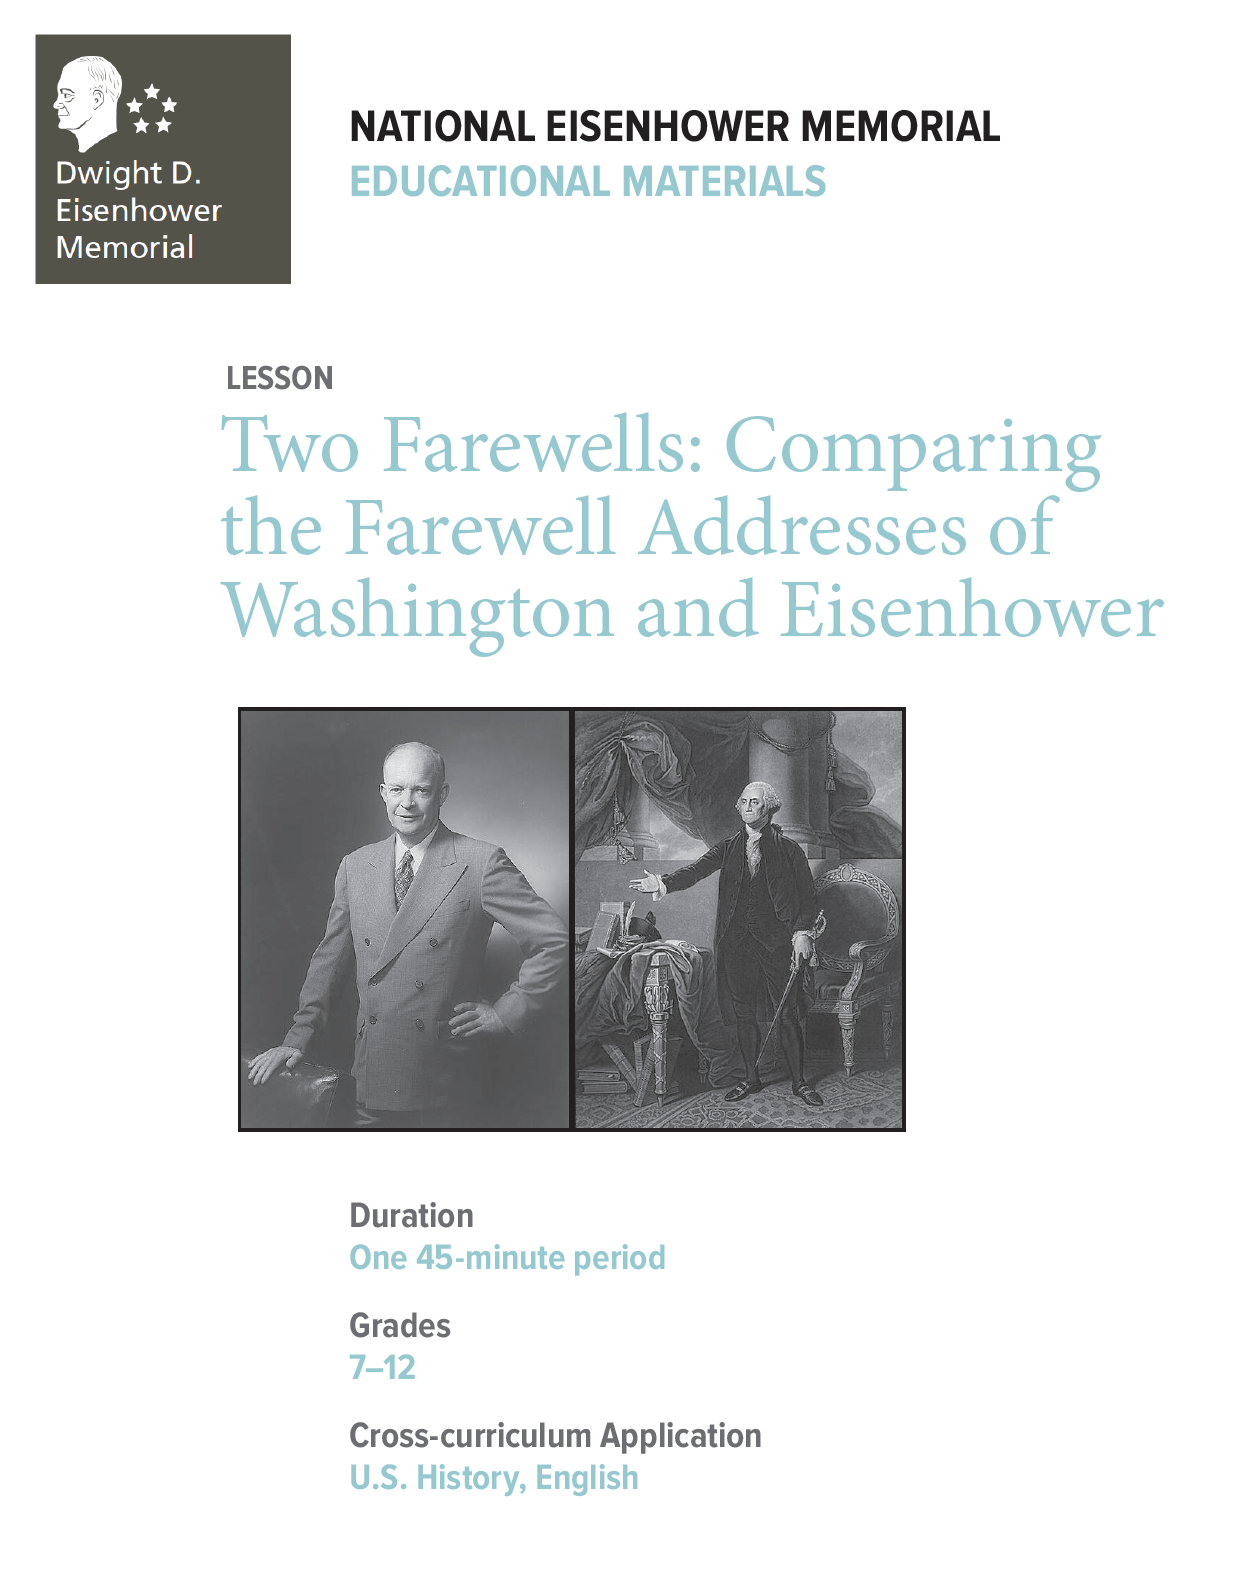 portraits of Eisenhower and Washington